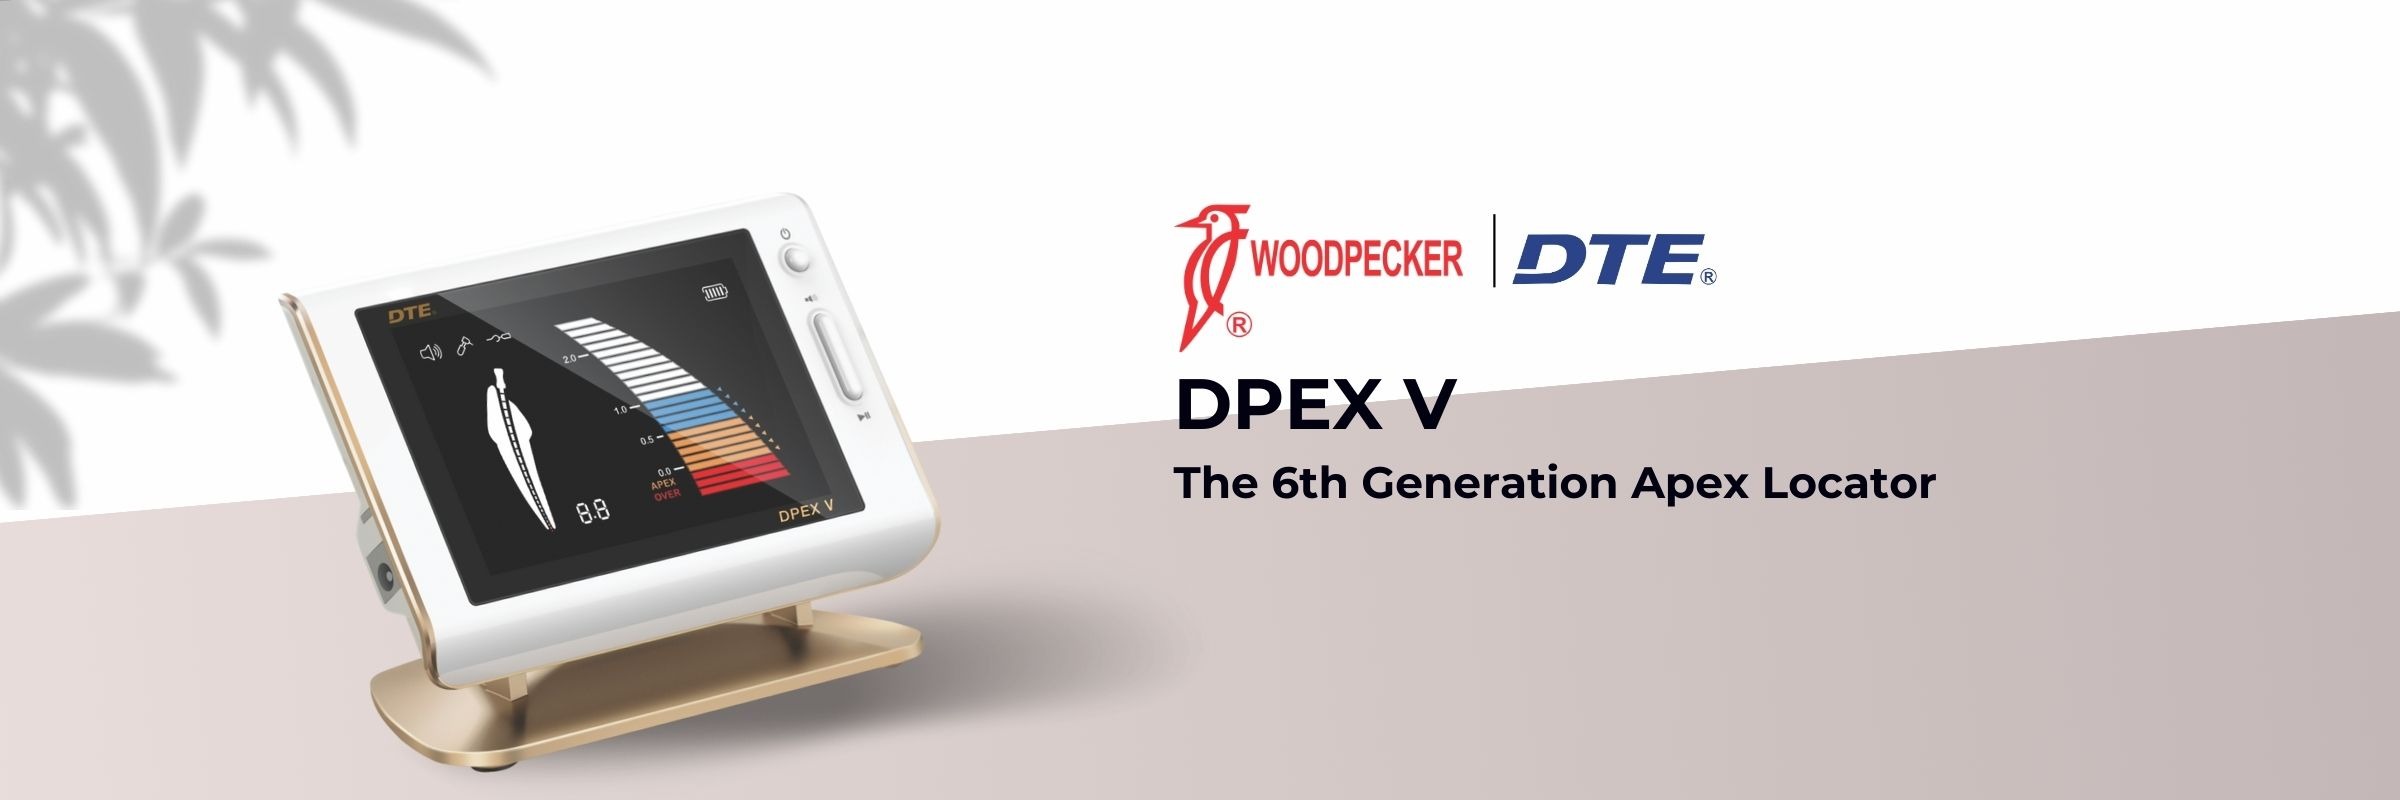 Woodpecker Dpex V apex locator Banner